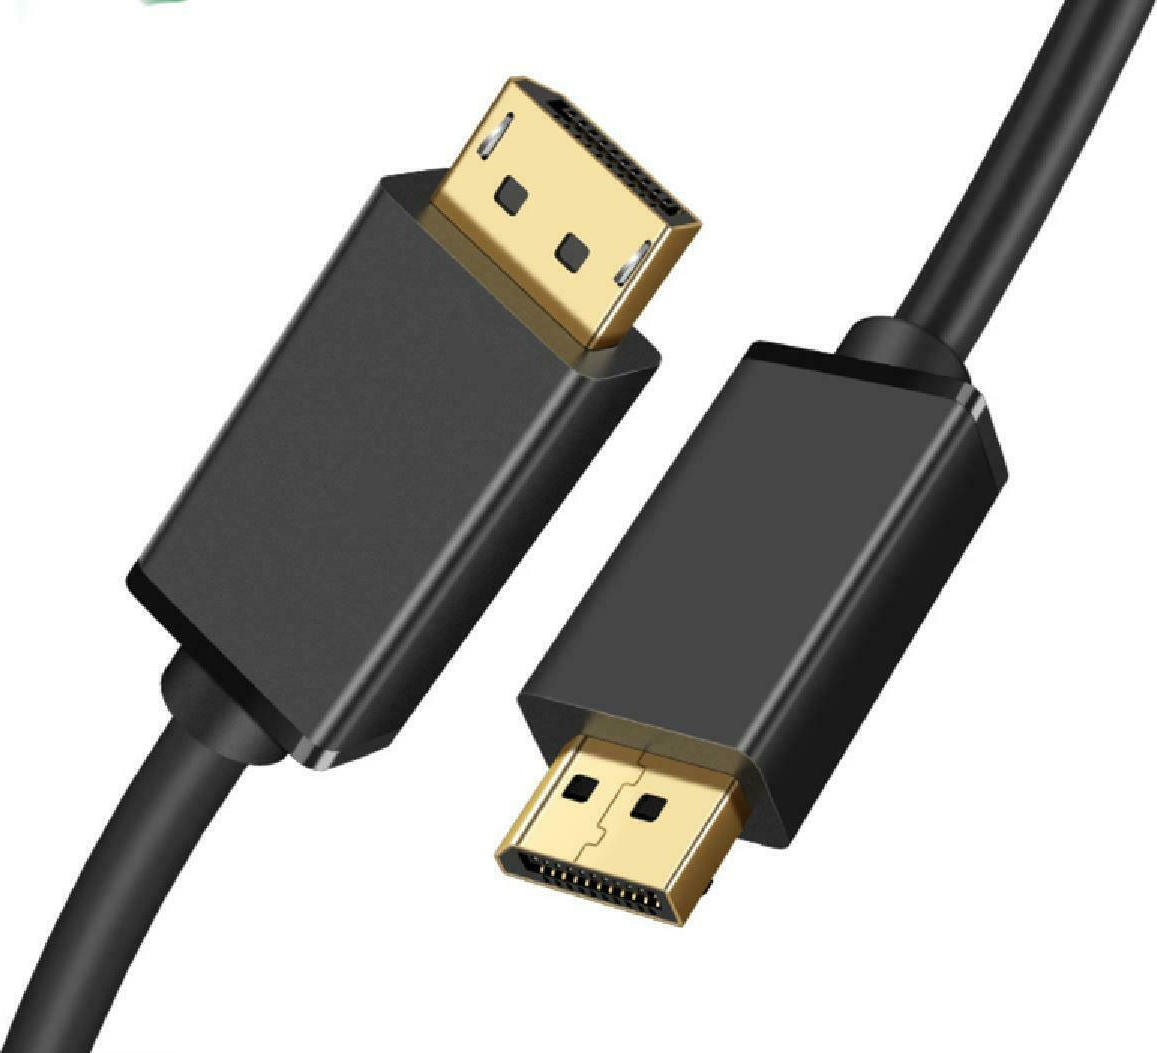 LINDY 4K対応 DisplayPort- HDMI(2ポート)分配器(型番:38409) 分配器、切替器